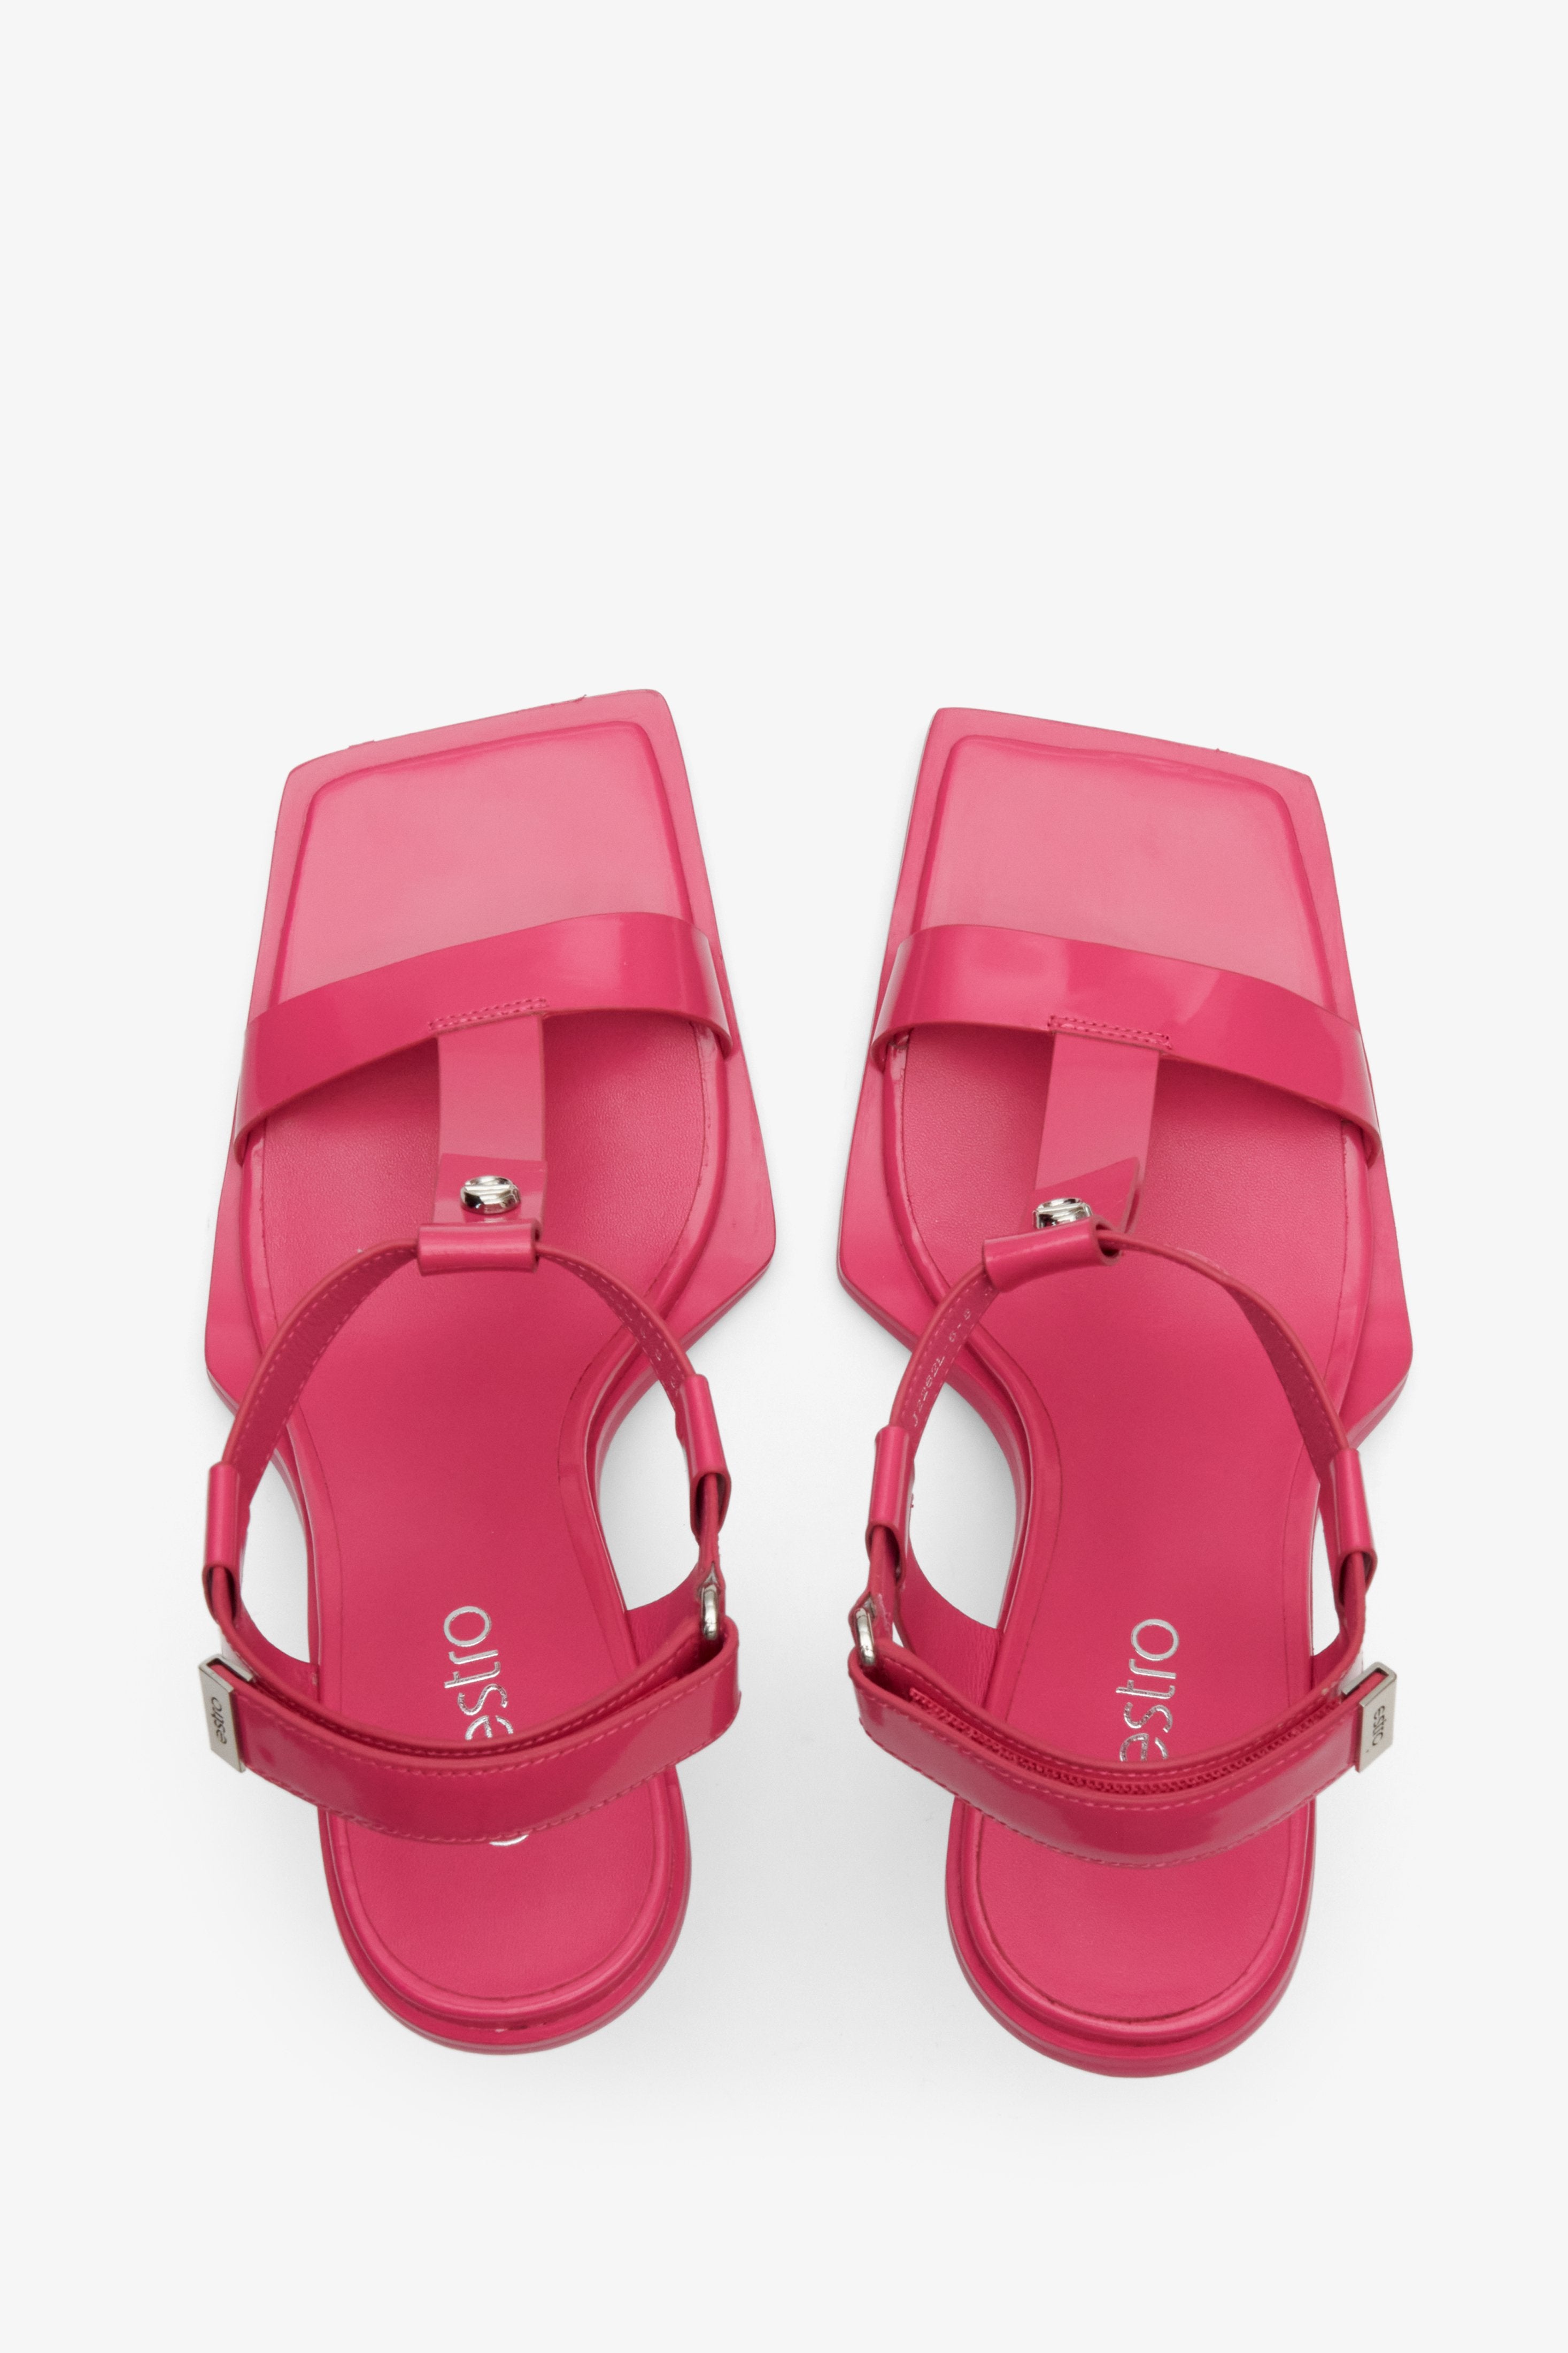 Sandałki damskie z otwartą linią palców na szpilce w kolorze różowym - prezentacja modelu z góry.